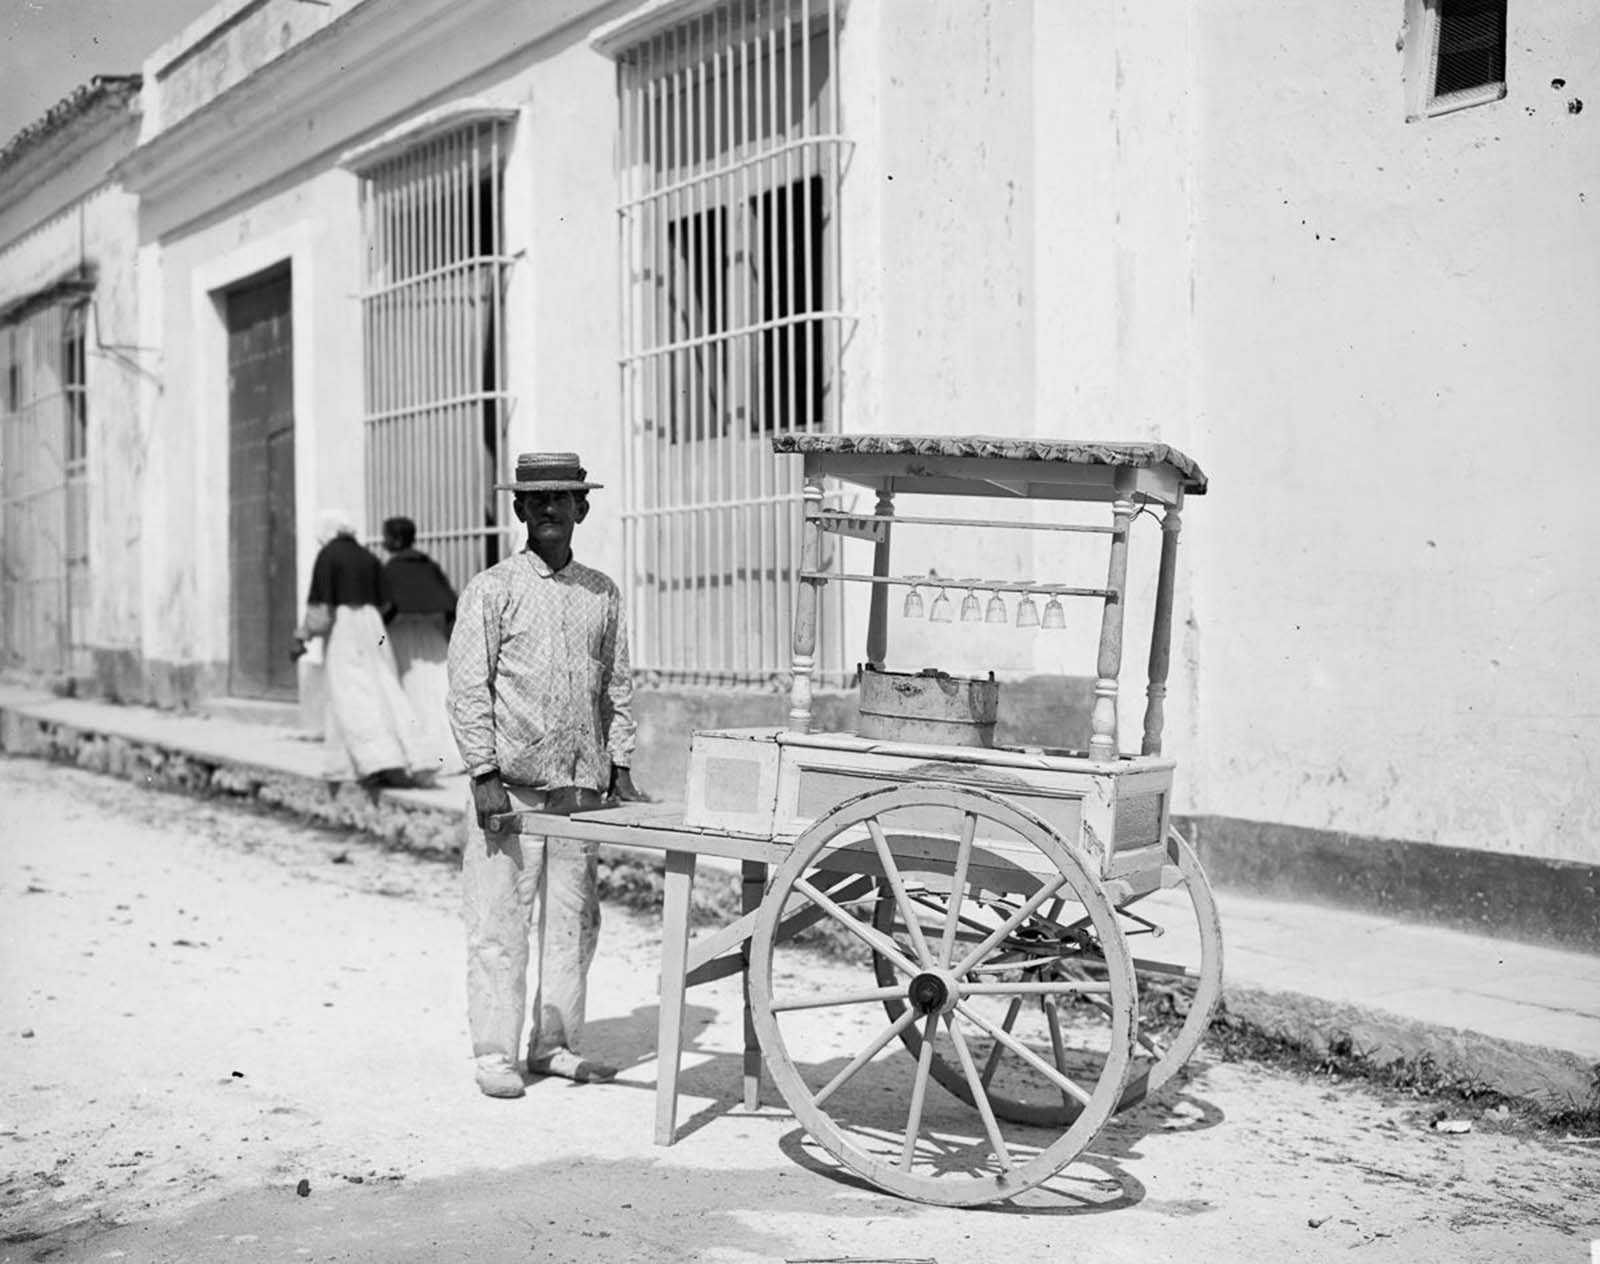 Les rues animées de la Vieille Havane, 1890-1910